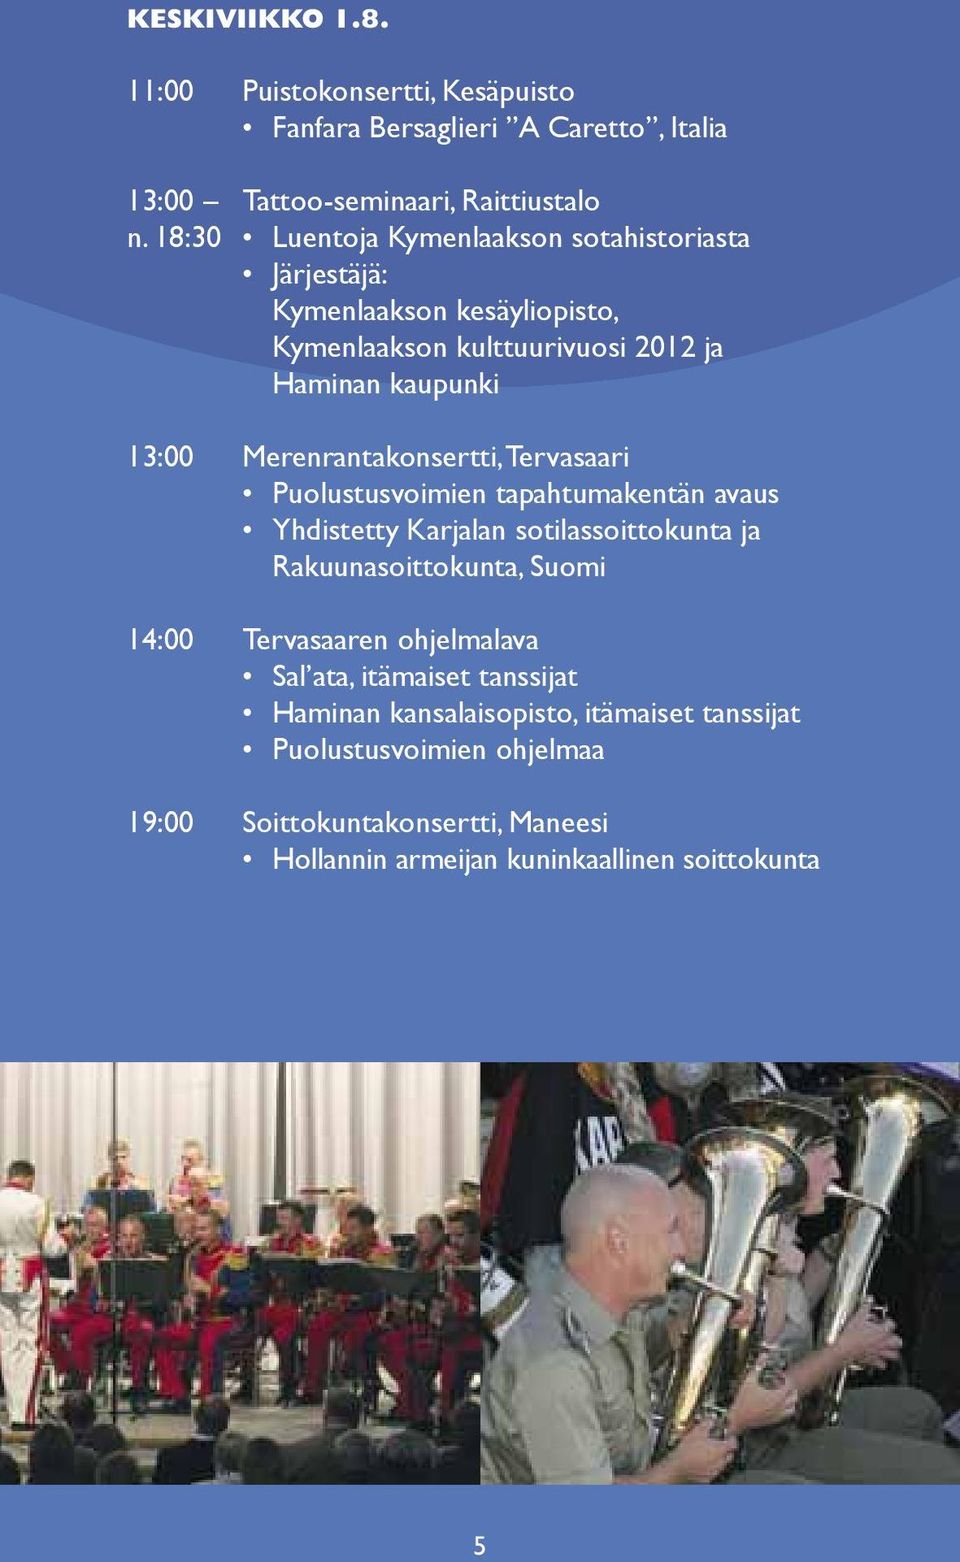 Merenrantakonsertti, Tervasaari Puolustusvoimien tapahtumakentän avaus Yhdistetty Karjalan sotilassoittokunta ja Rakuunasoittokunta, Suomi 14:00